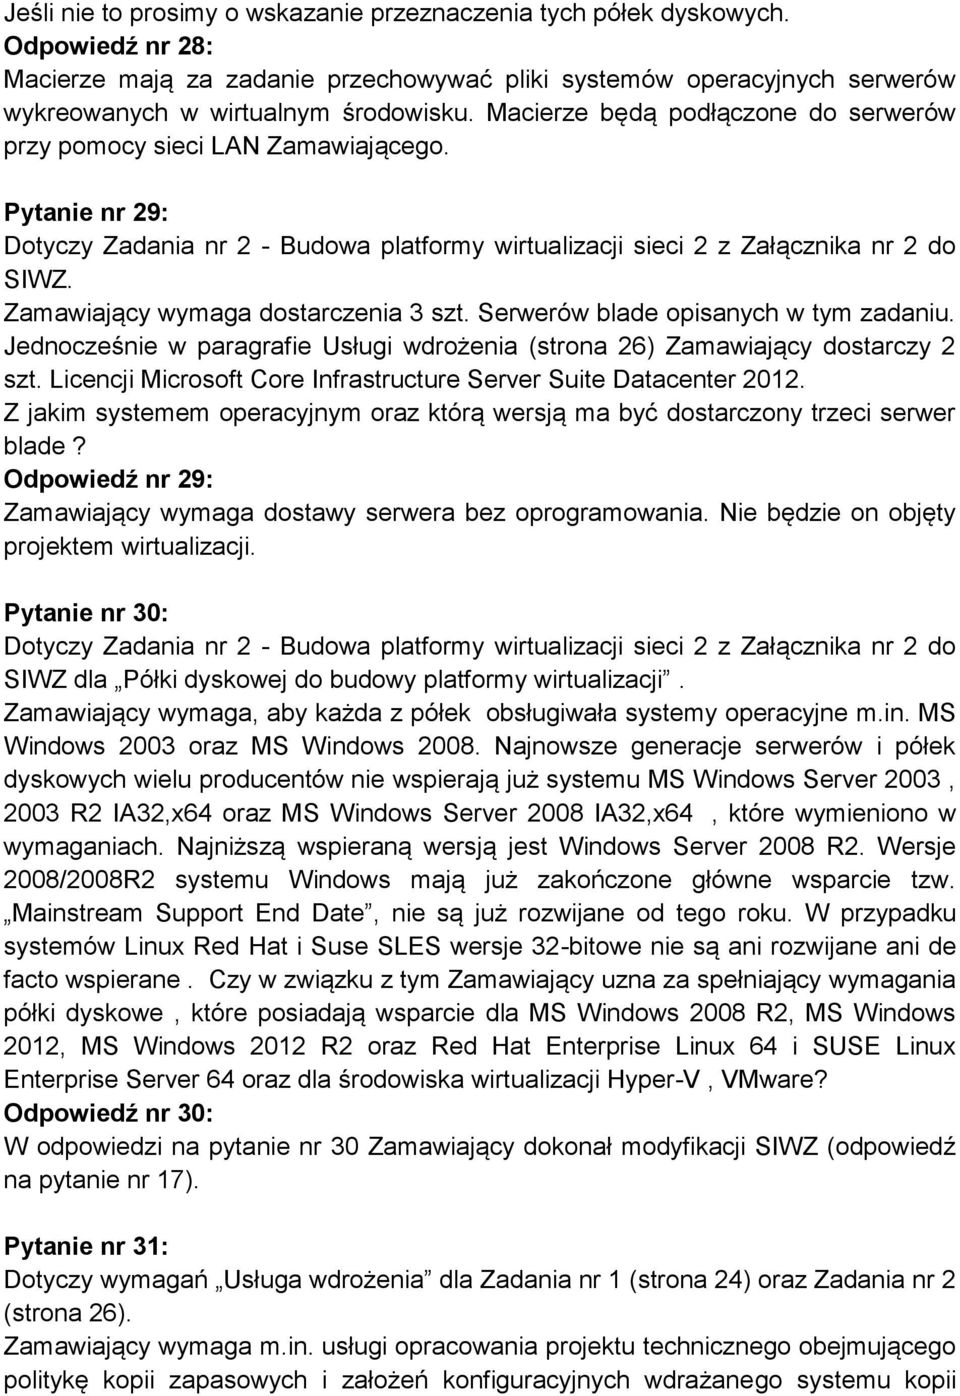 Jednocześnie w paragrafie Usługi wdrożenia (strona 26) Zamawiający dostarczy 2 szt. Licencji Microsoft Core Infrastructure Server Suite Datacenter 2012.